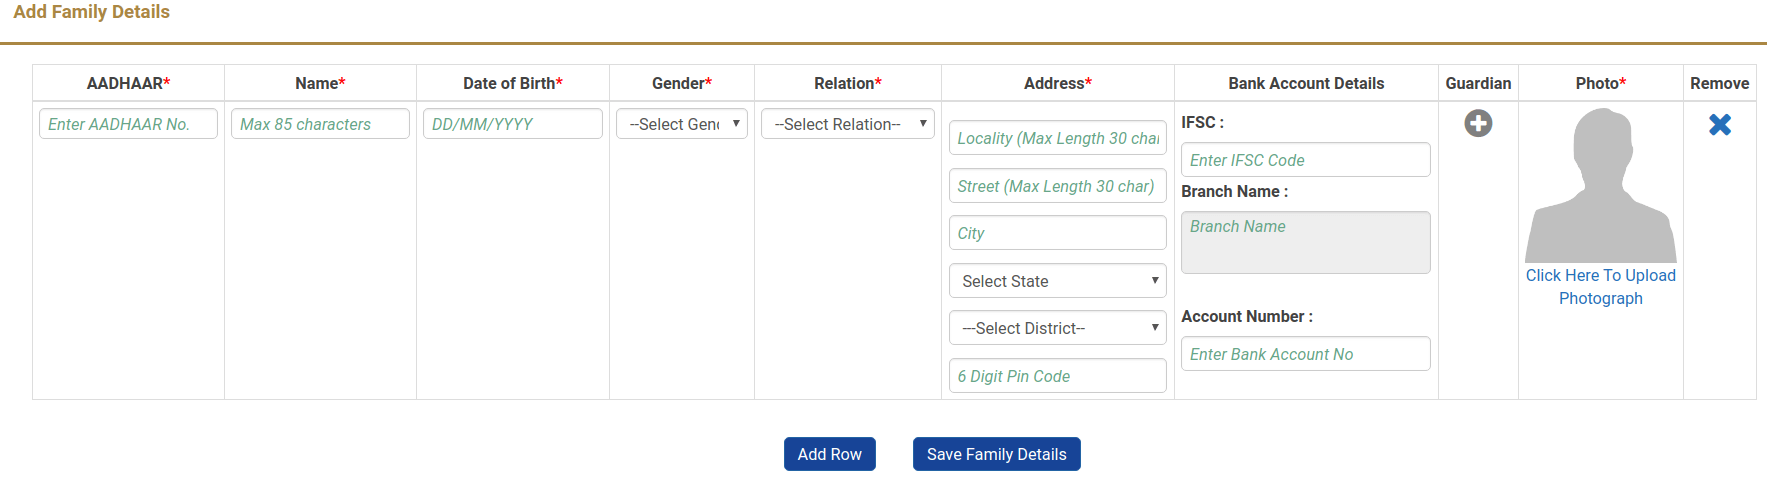 enter family details